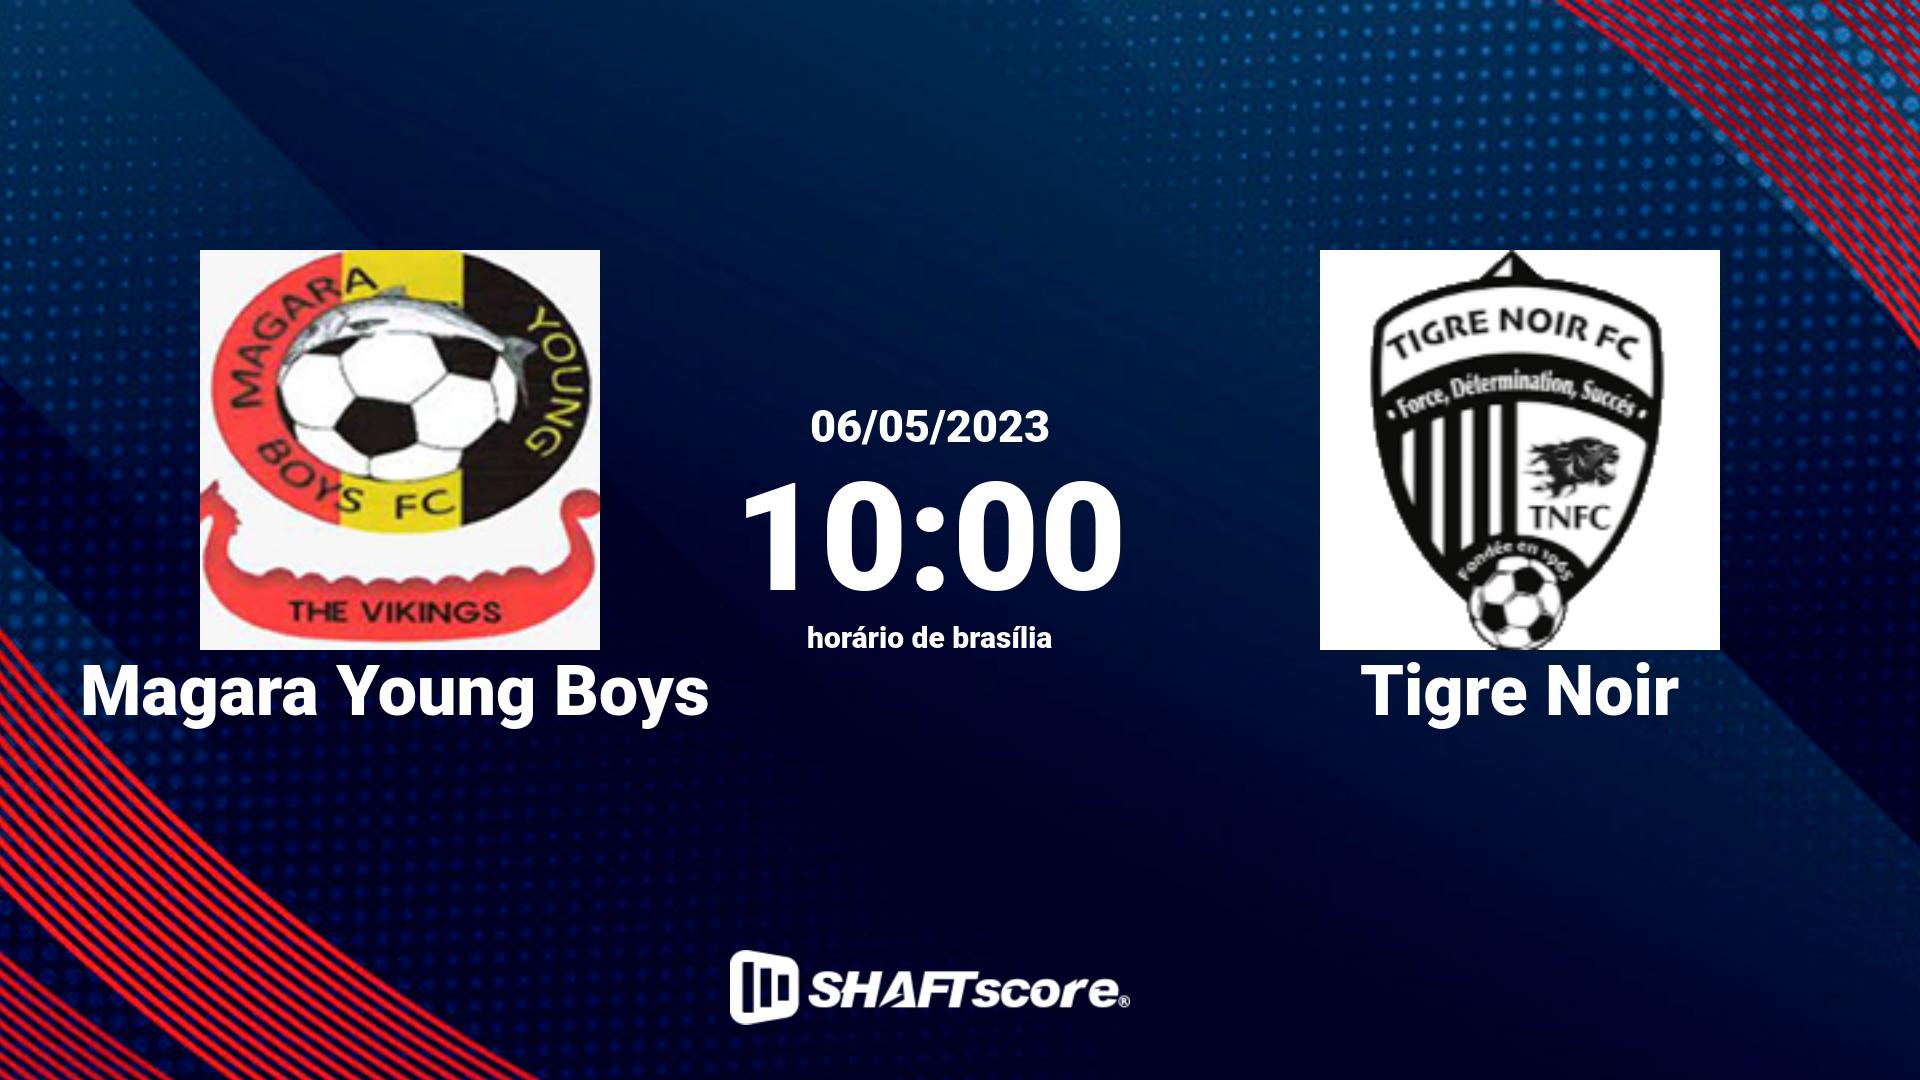 Estatísticas do jogo Magara Young Boys vs Tigre Noir 06.05 10:00